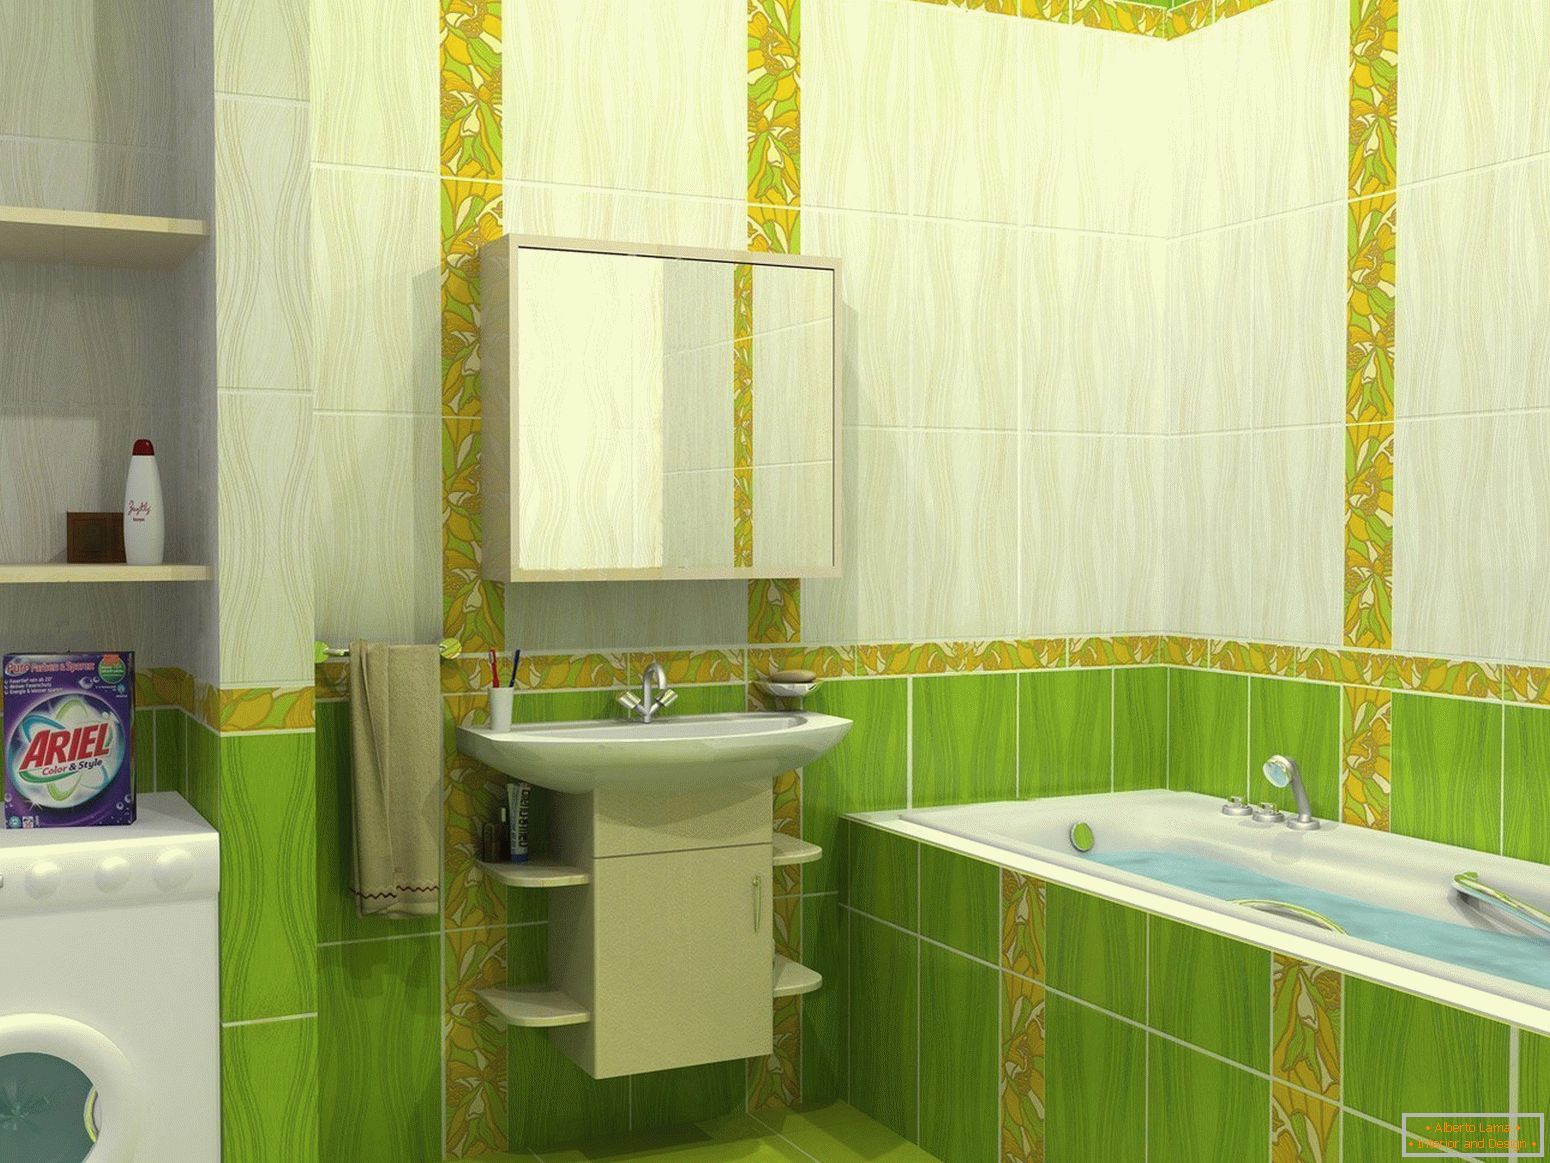 Zasnova kopalnice v zelenih barvah